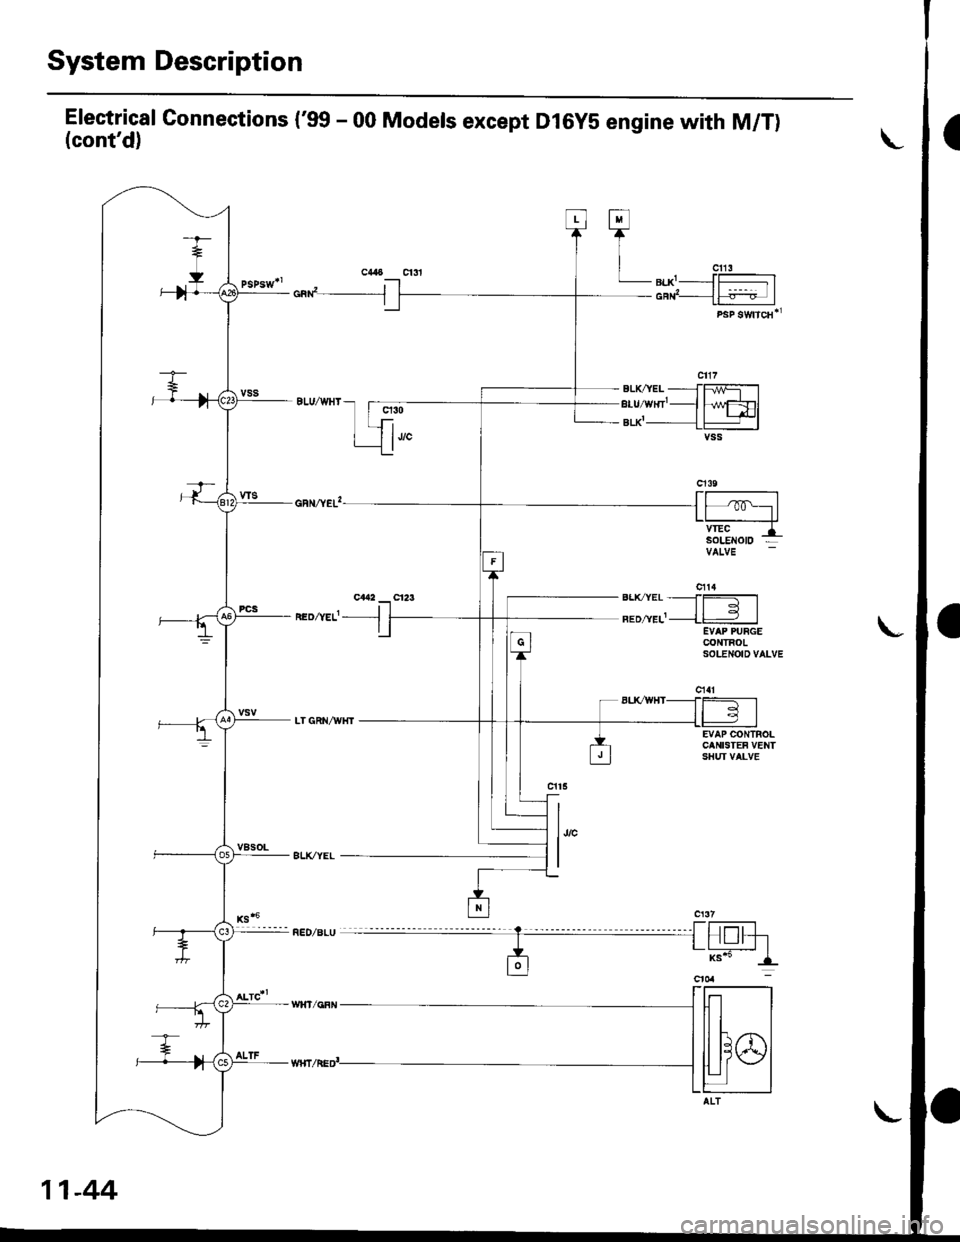 HONDA CIVIC 1998 6.G User Guide System Description
Electrical Gonnections (99 - 00 Models except Dl6yS engine with M/T)(contd)
cad__J
neozvef- -l
q30
1""
h/wFDlt+l-lvss
EVAP CONTROLCANISTEF VENTSHUI VALVE
l,,"
I
Fl
TI
| "u,LB|.X-